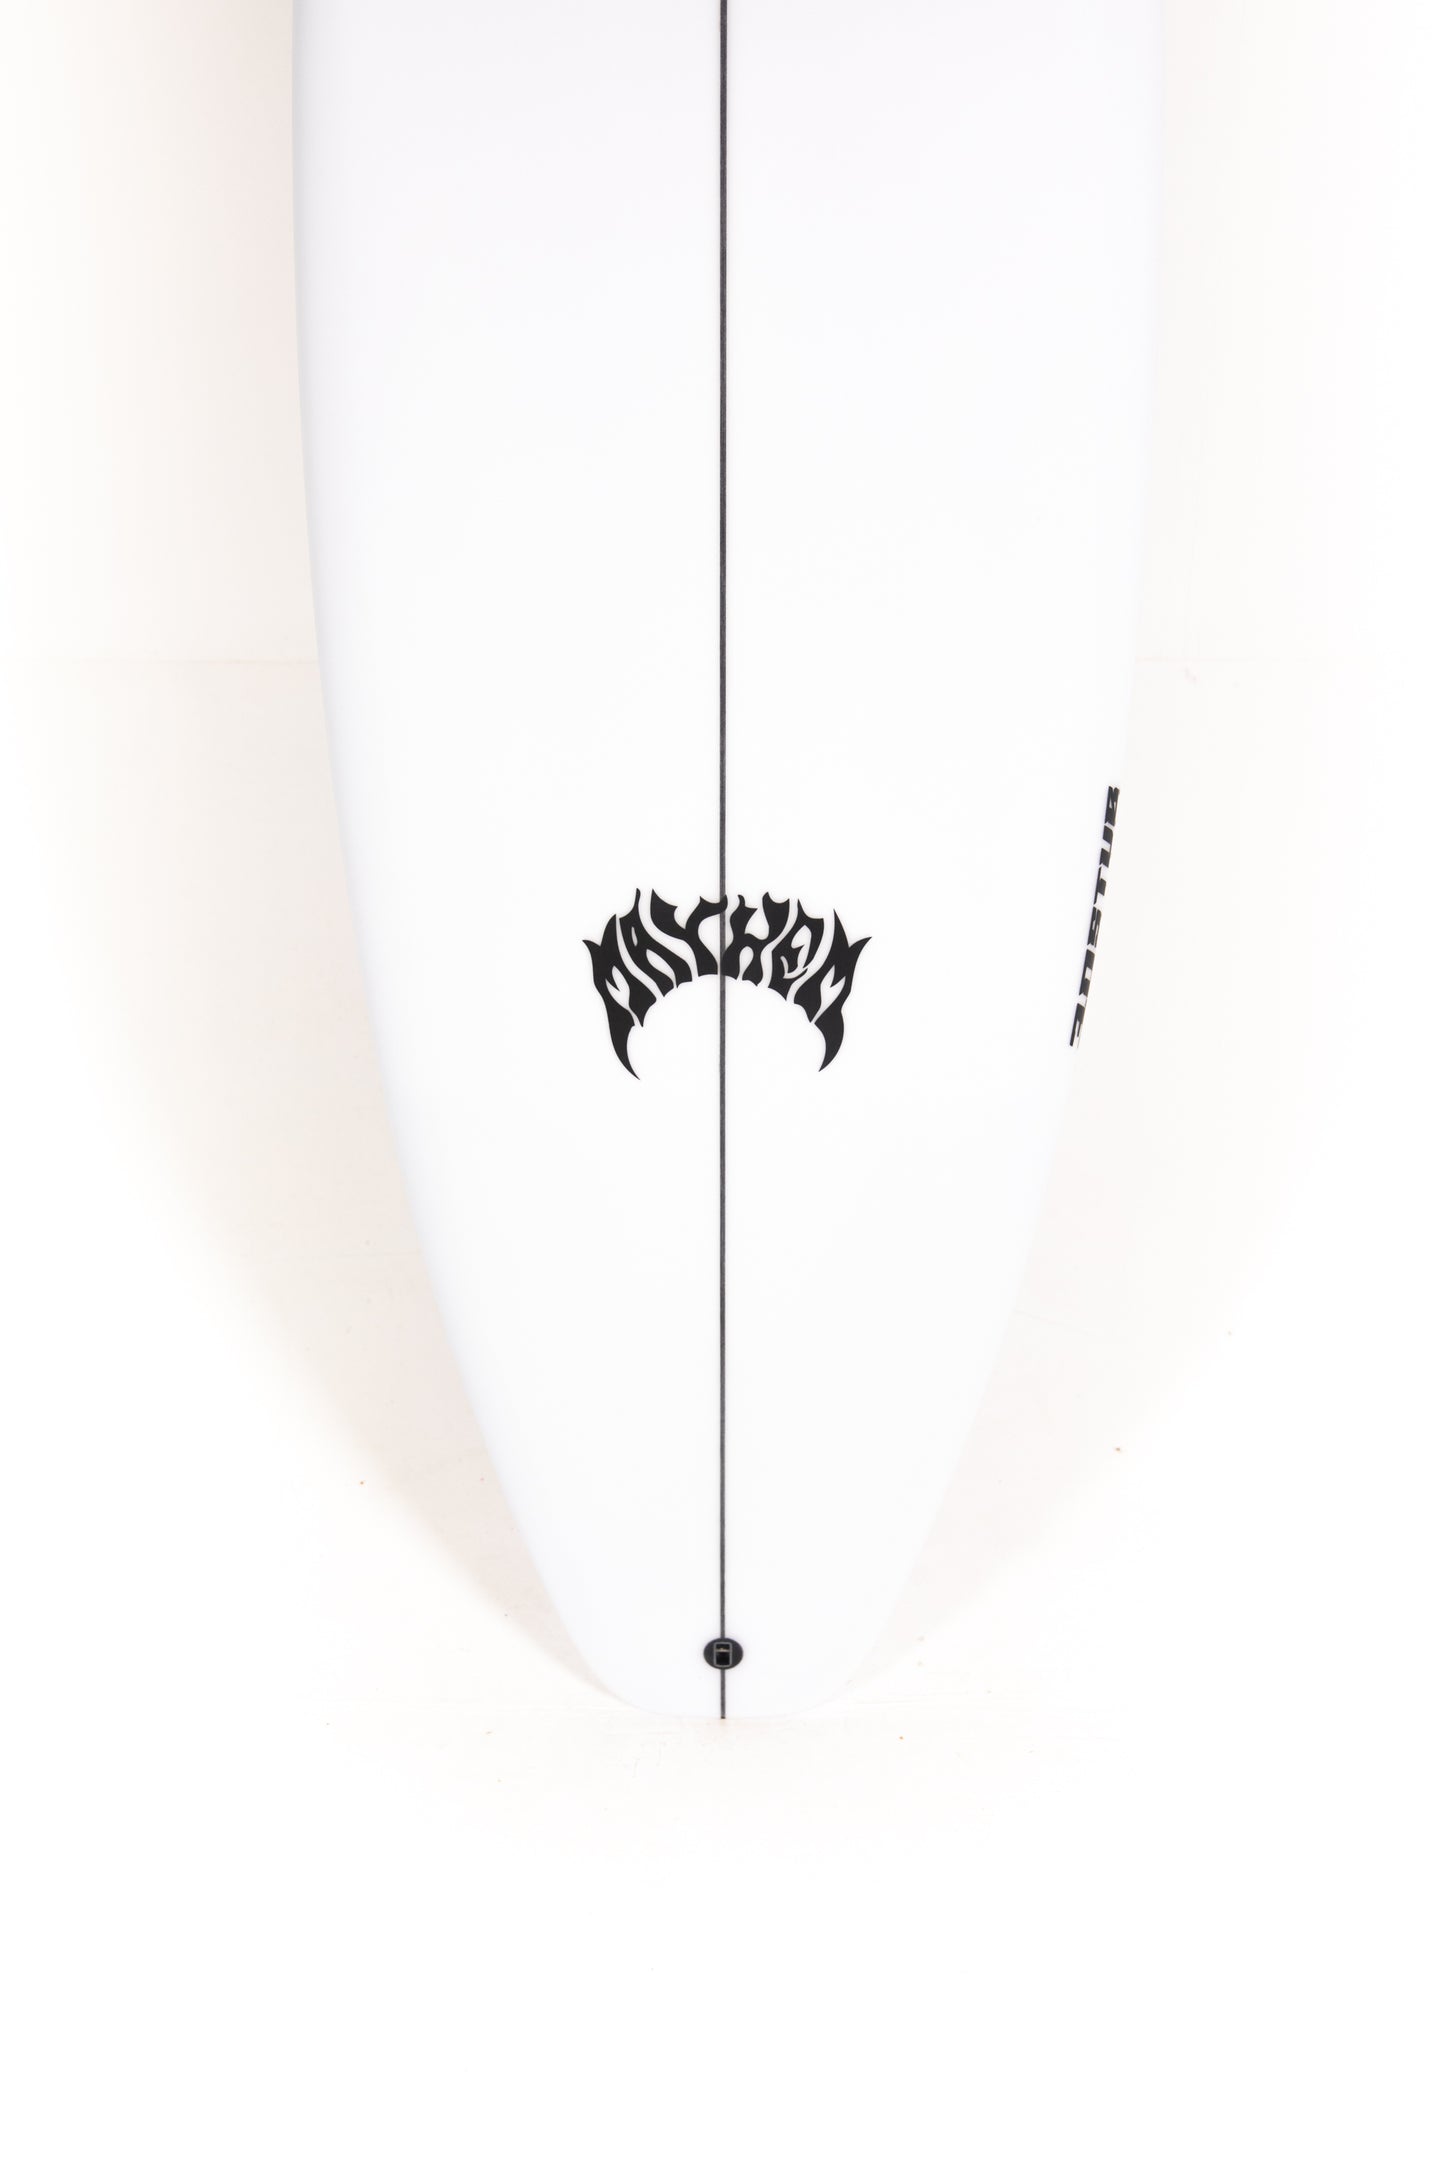 
                  
                    Pukas Surf Shop - Lost Surfboard - 3.0_STUB DRIVER by Matt Biolos - 5’9” x 19" x 2.35" - 27.25L - MH18874
                  
                